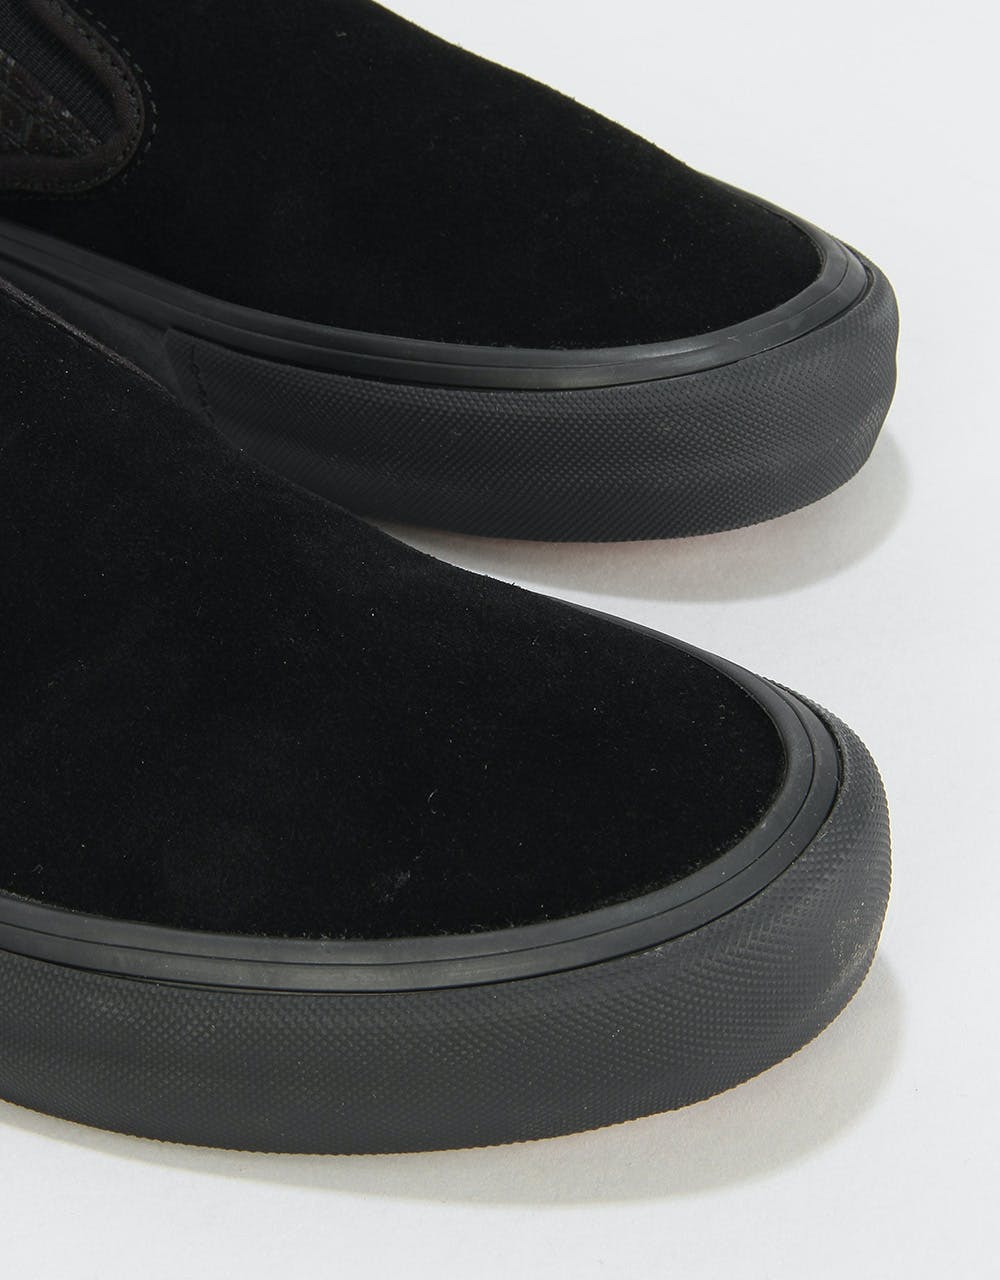 Vans Slip-On Pro Skate Shoes - (Baker) Black/Black/Red